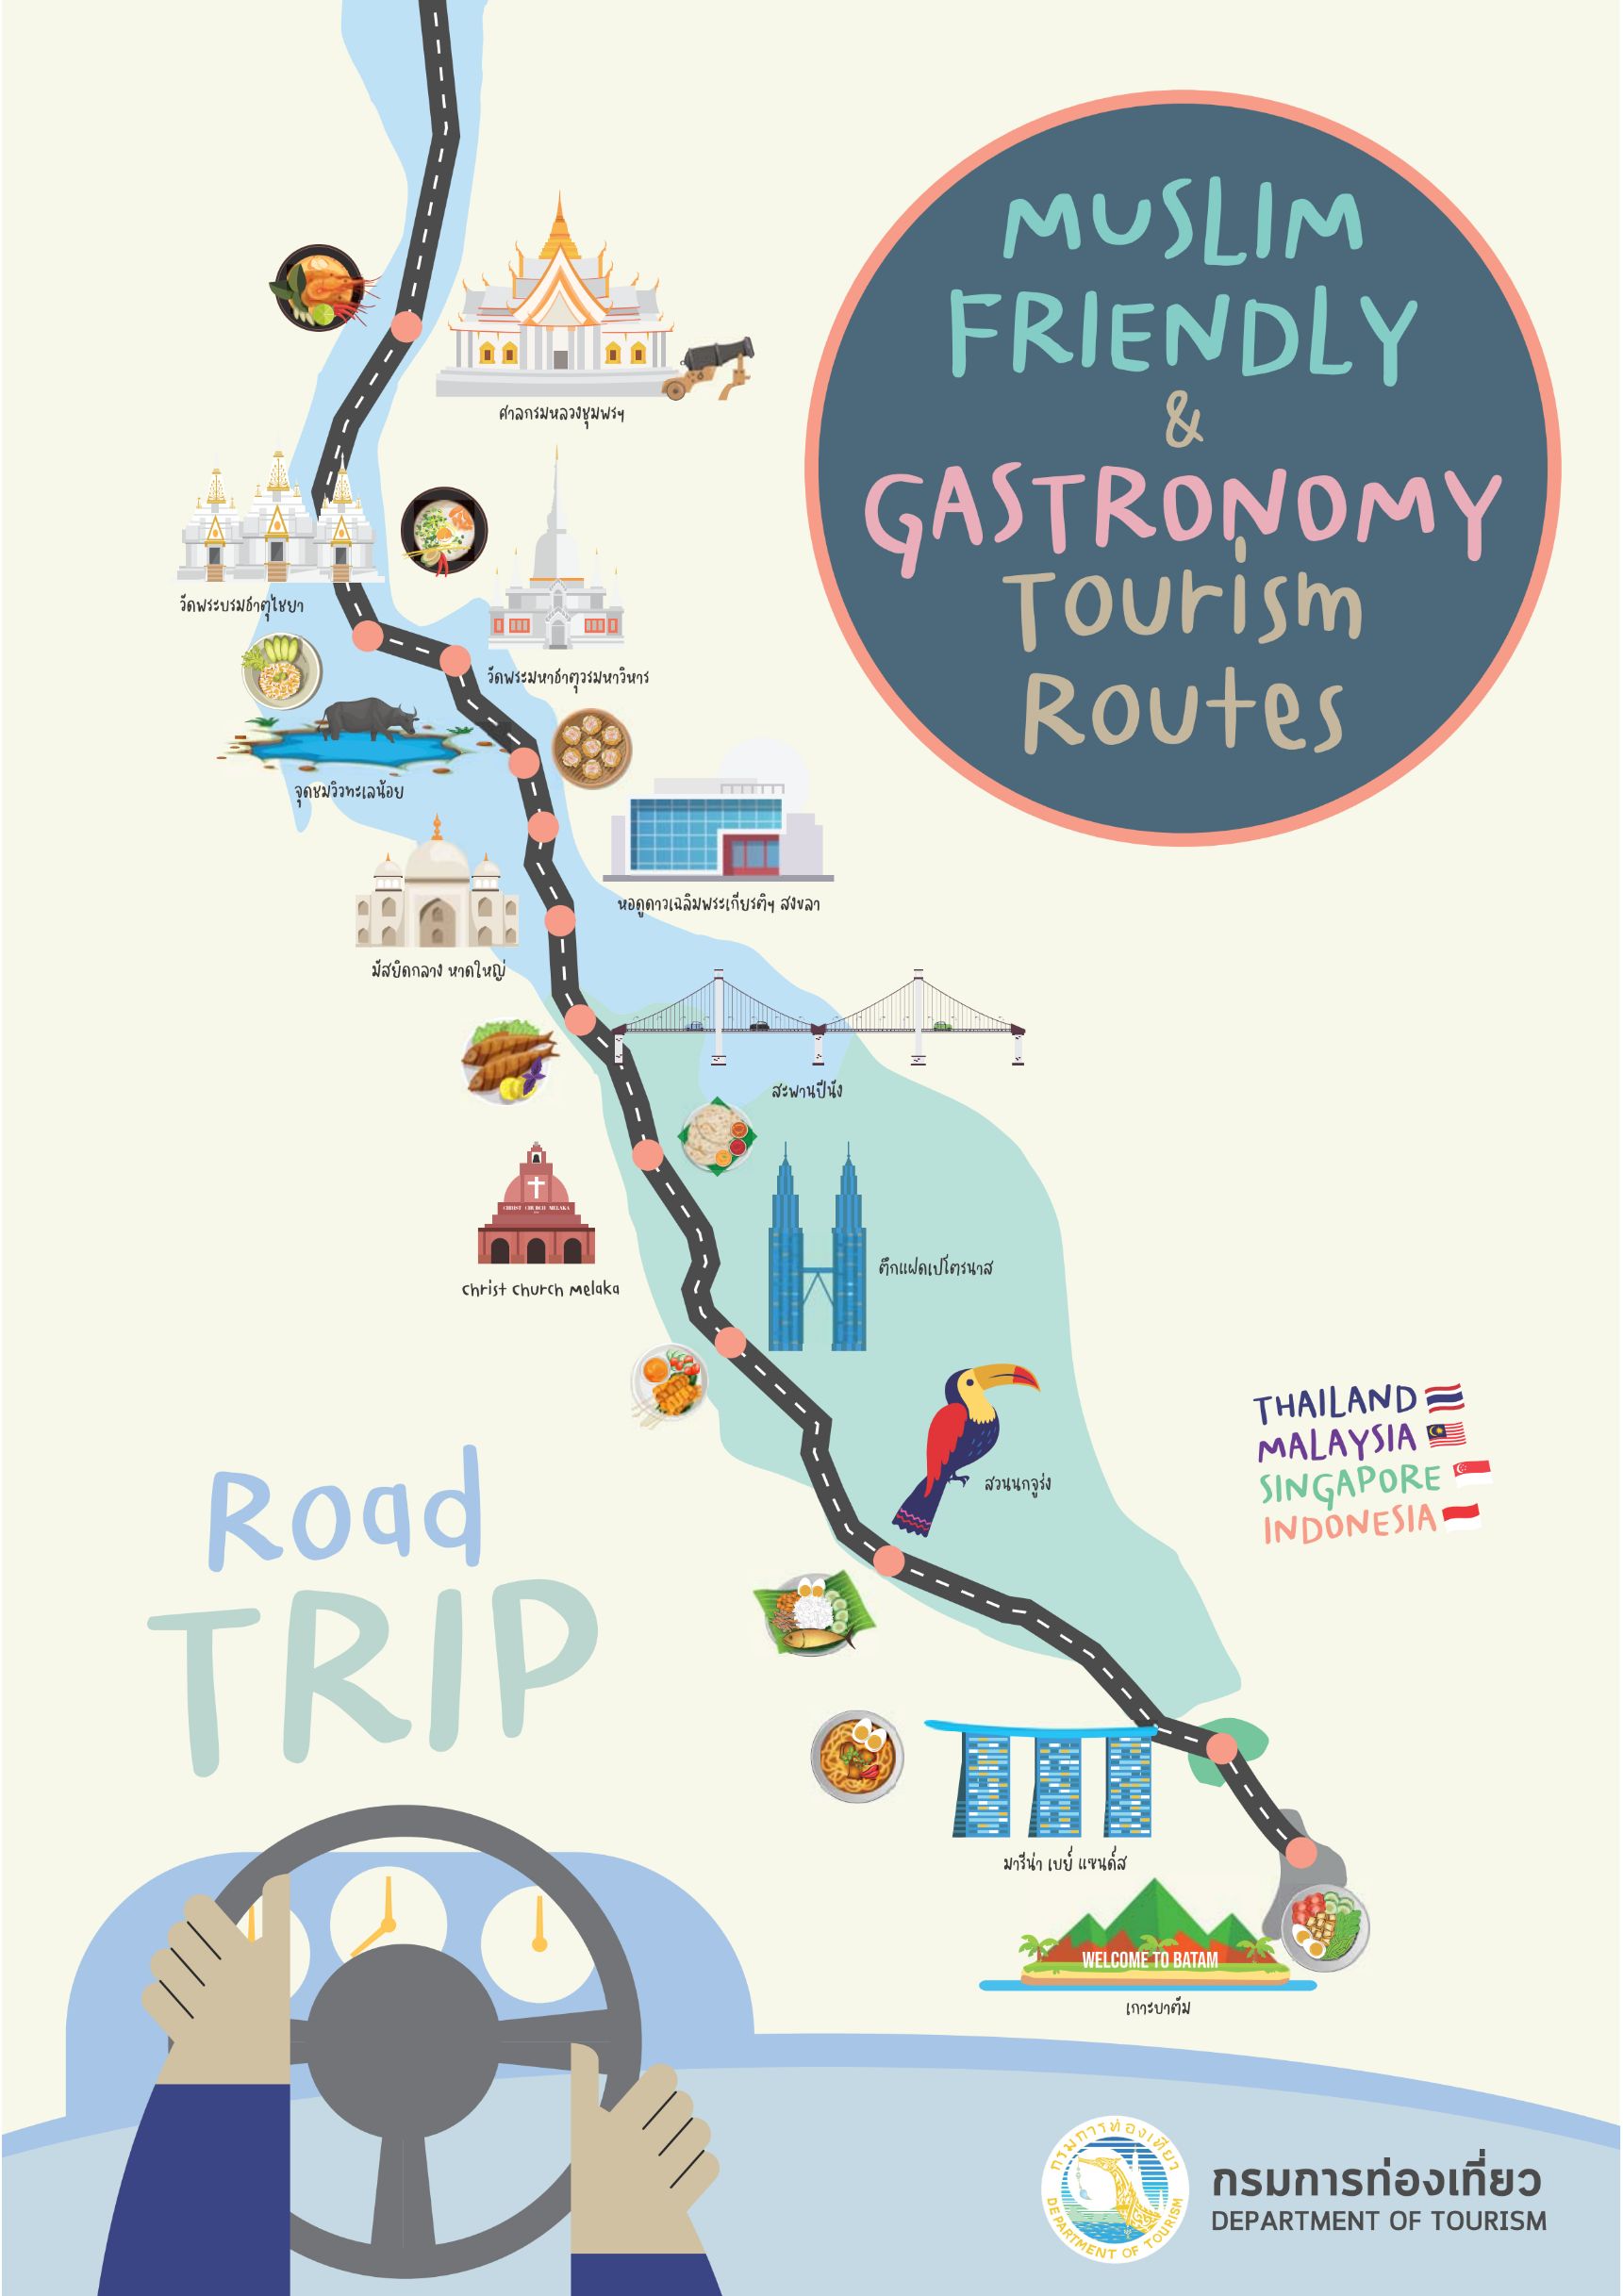 คู่มือเส้นทางท่องเที่ยว Muslim Friendly & Gastronomy Tourism Routes ฉบับภาษาอังกฤษ